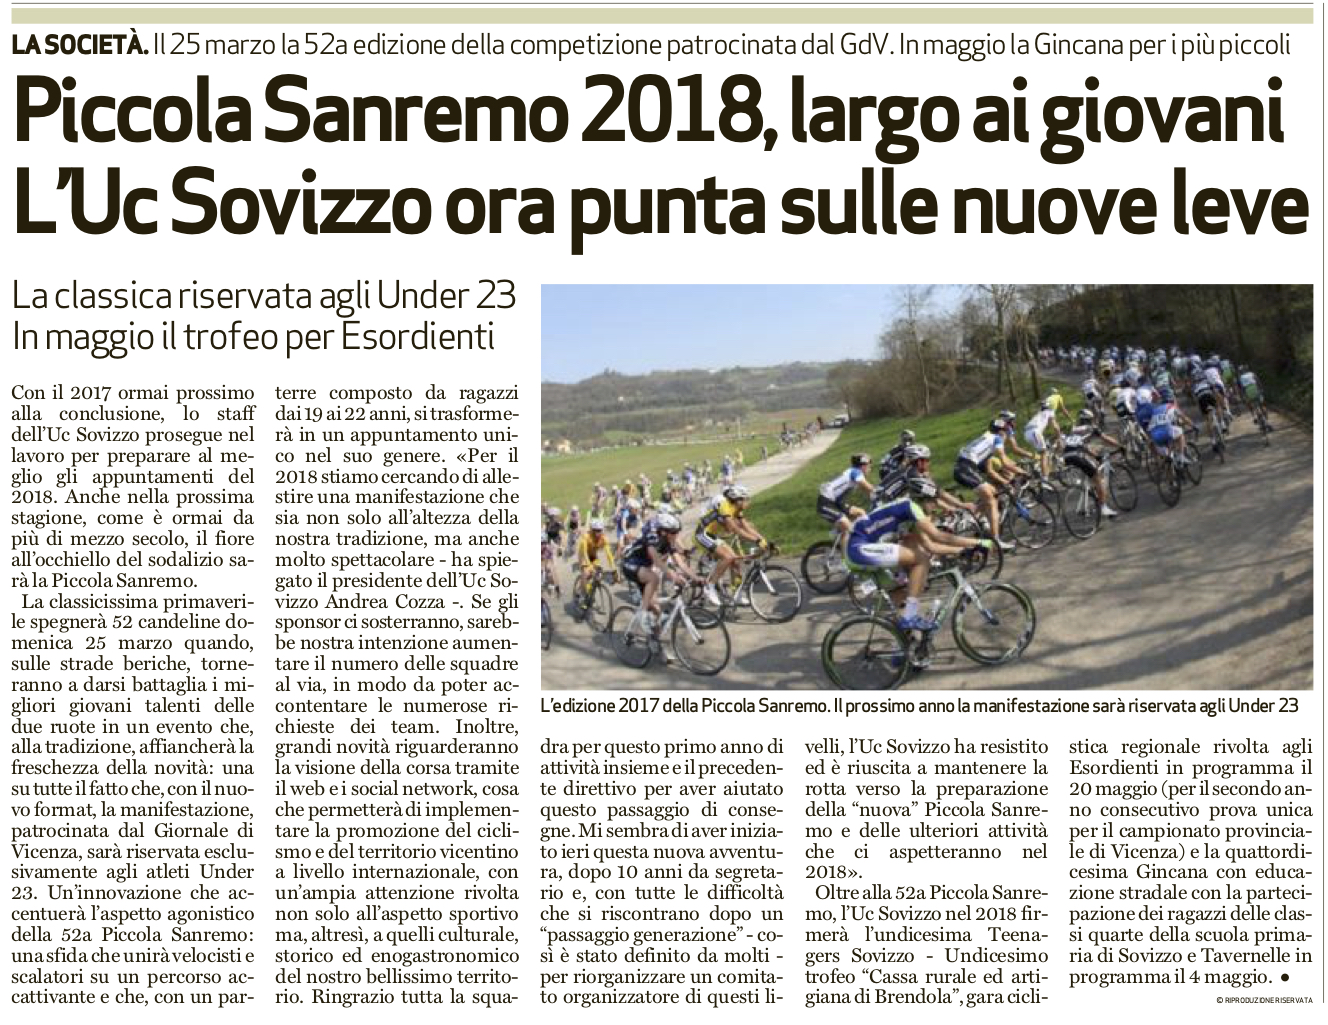 Il Giornale Di Vicenza 6 Dicembre 2017